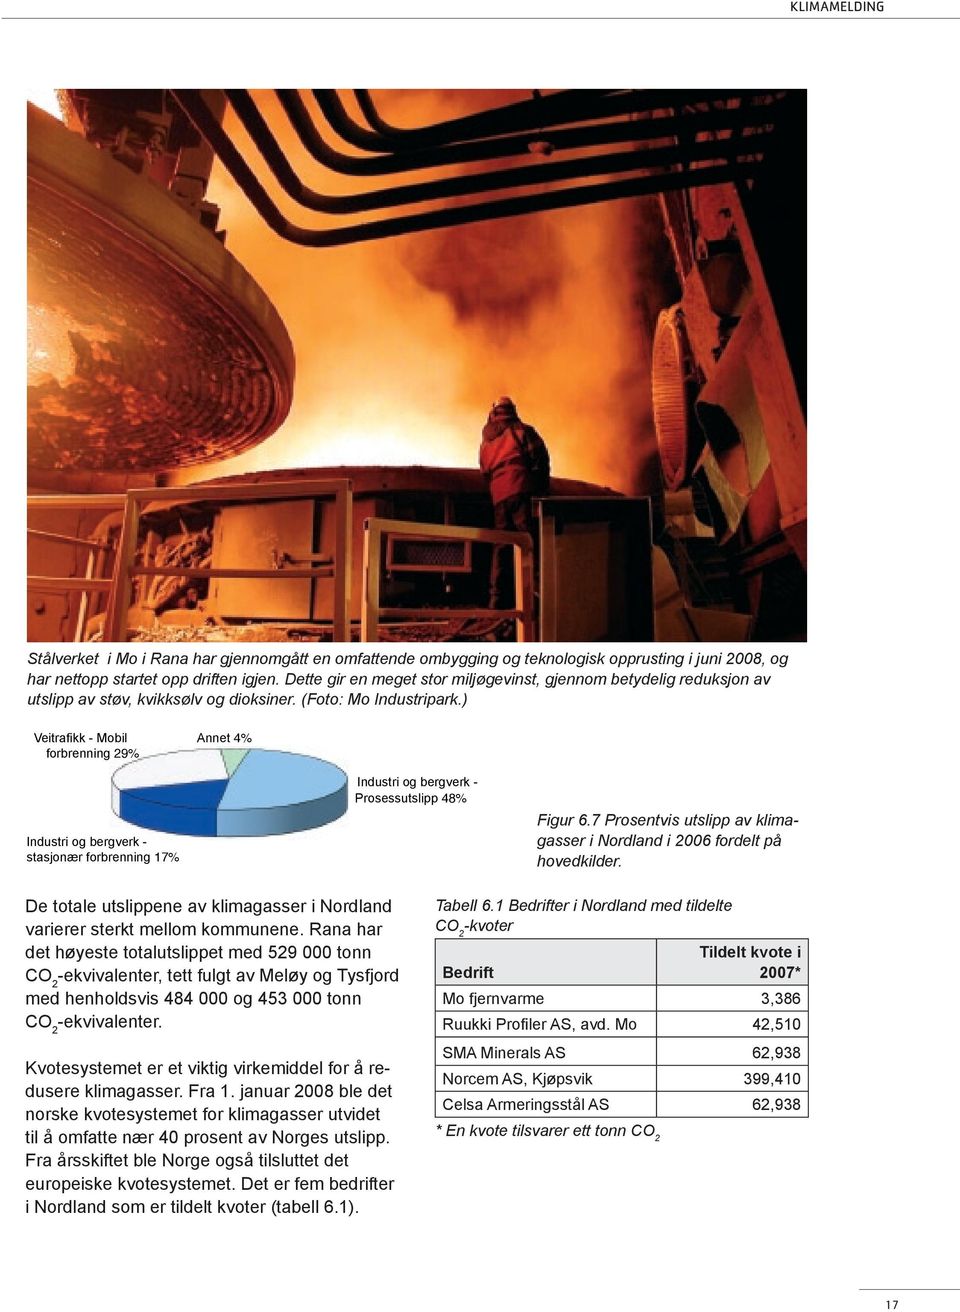 ) Veitrafikk - Mobil forbrenning 29% Annet 4% Industri og bergverk - stasjonær forbrenning 17% Industri og bergverk - Prosessutslipp 48% Figur 6.